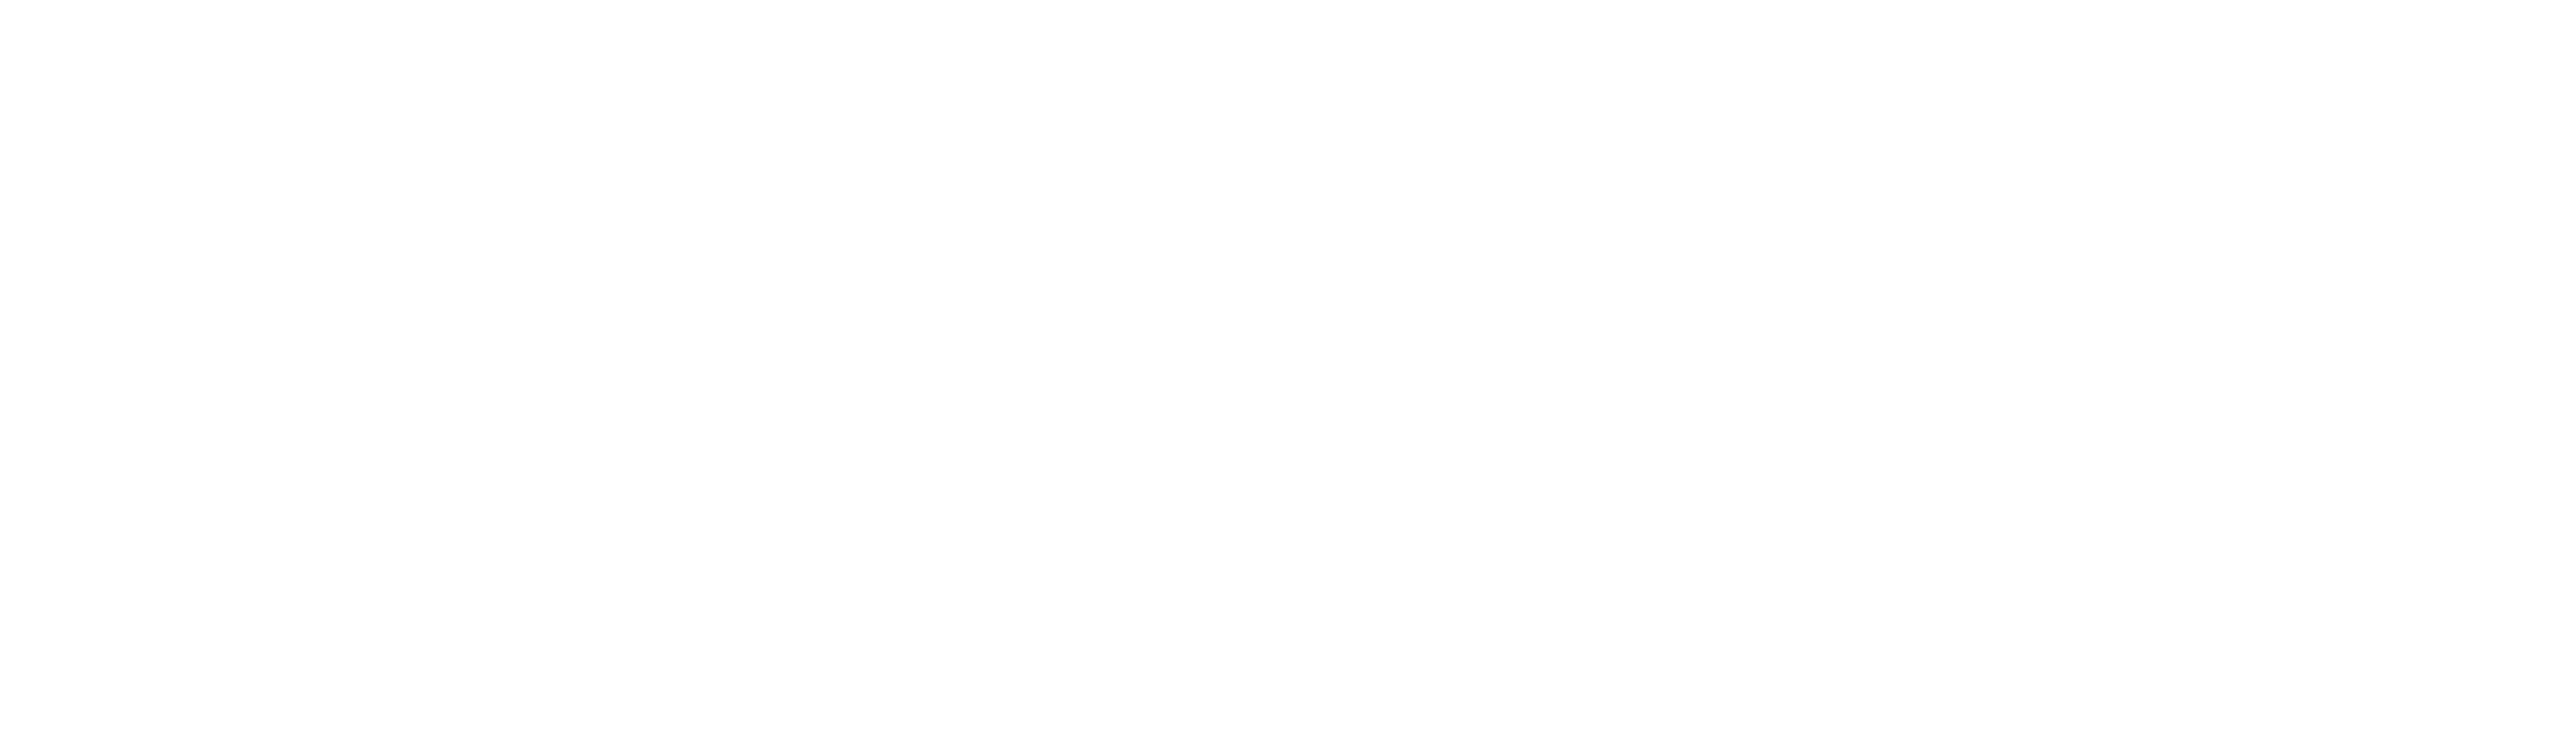 Mo-Sci logo